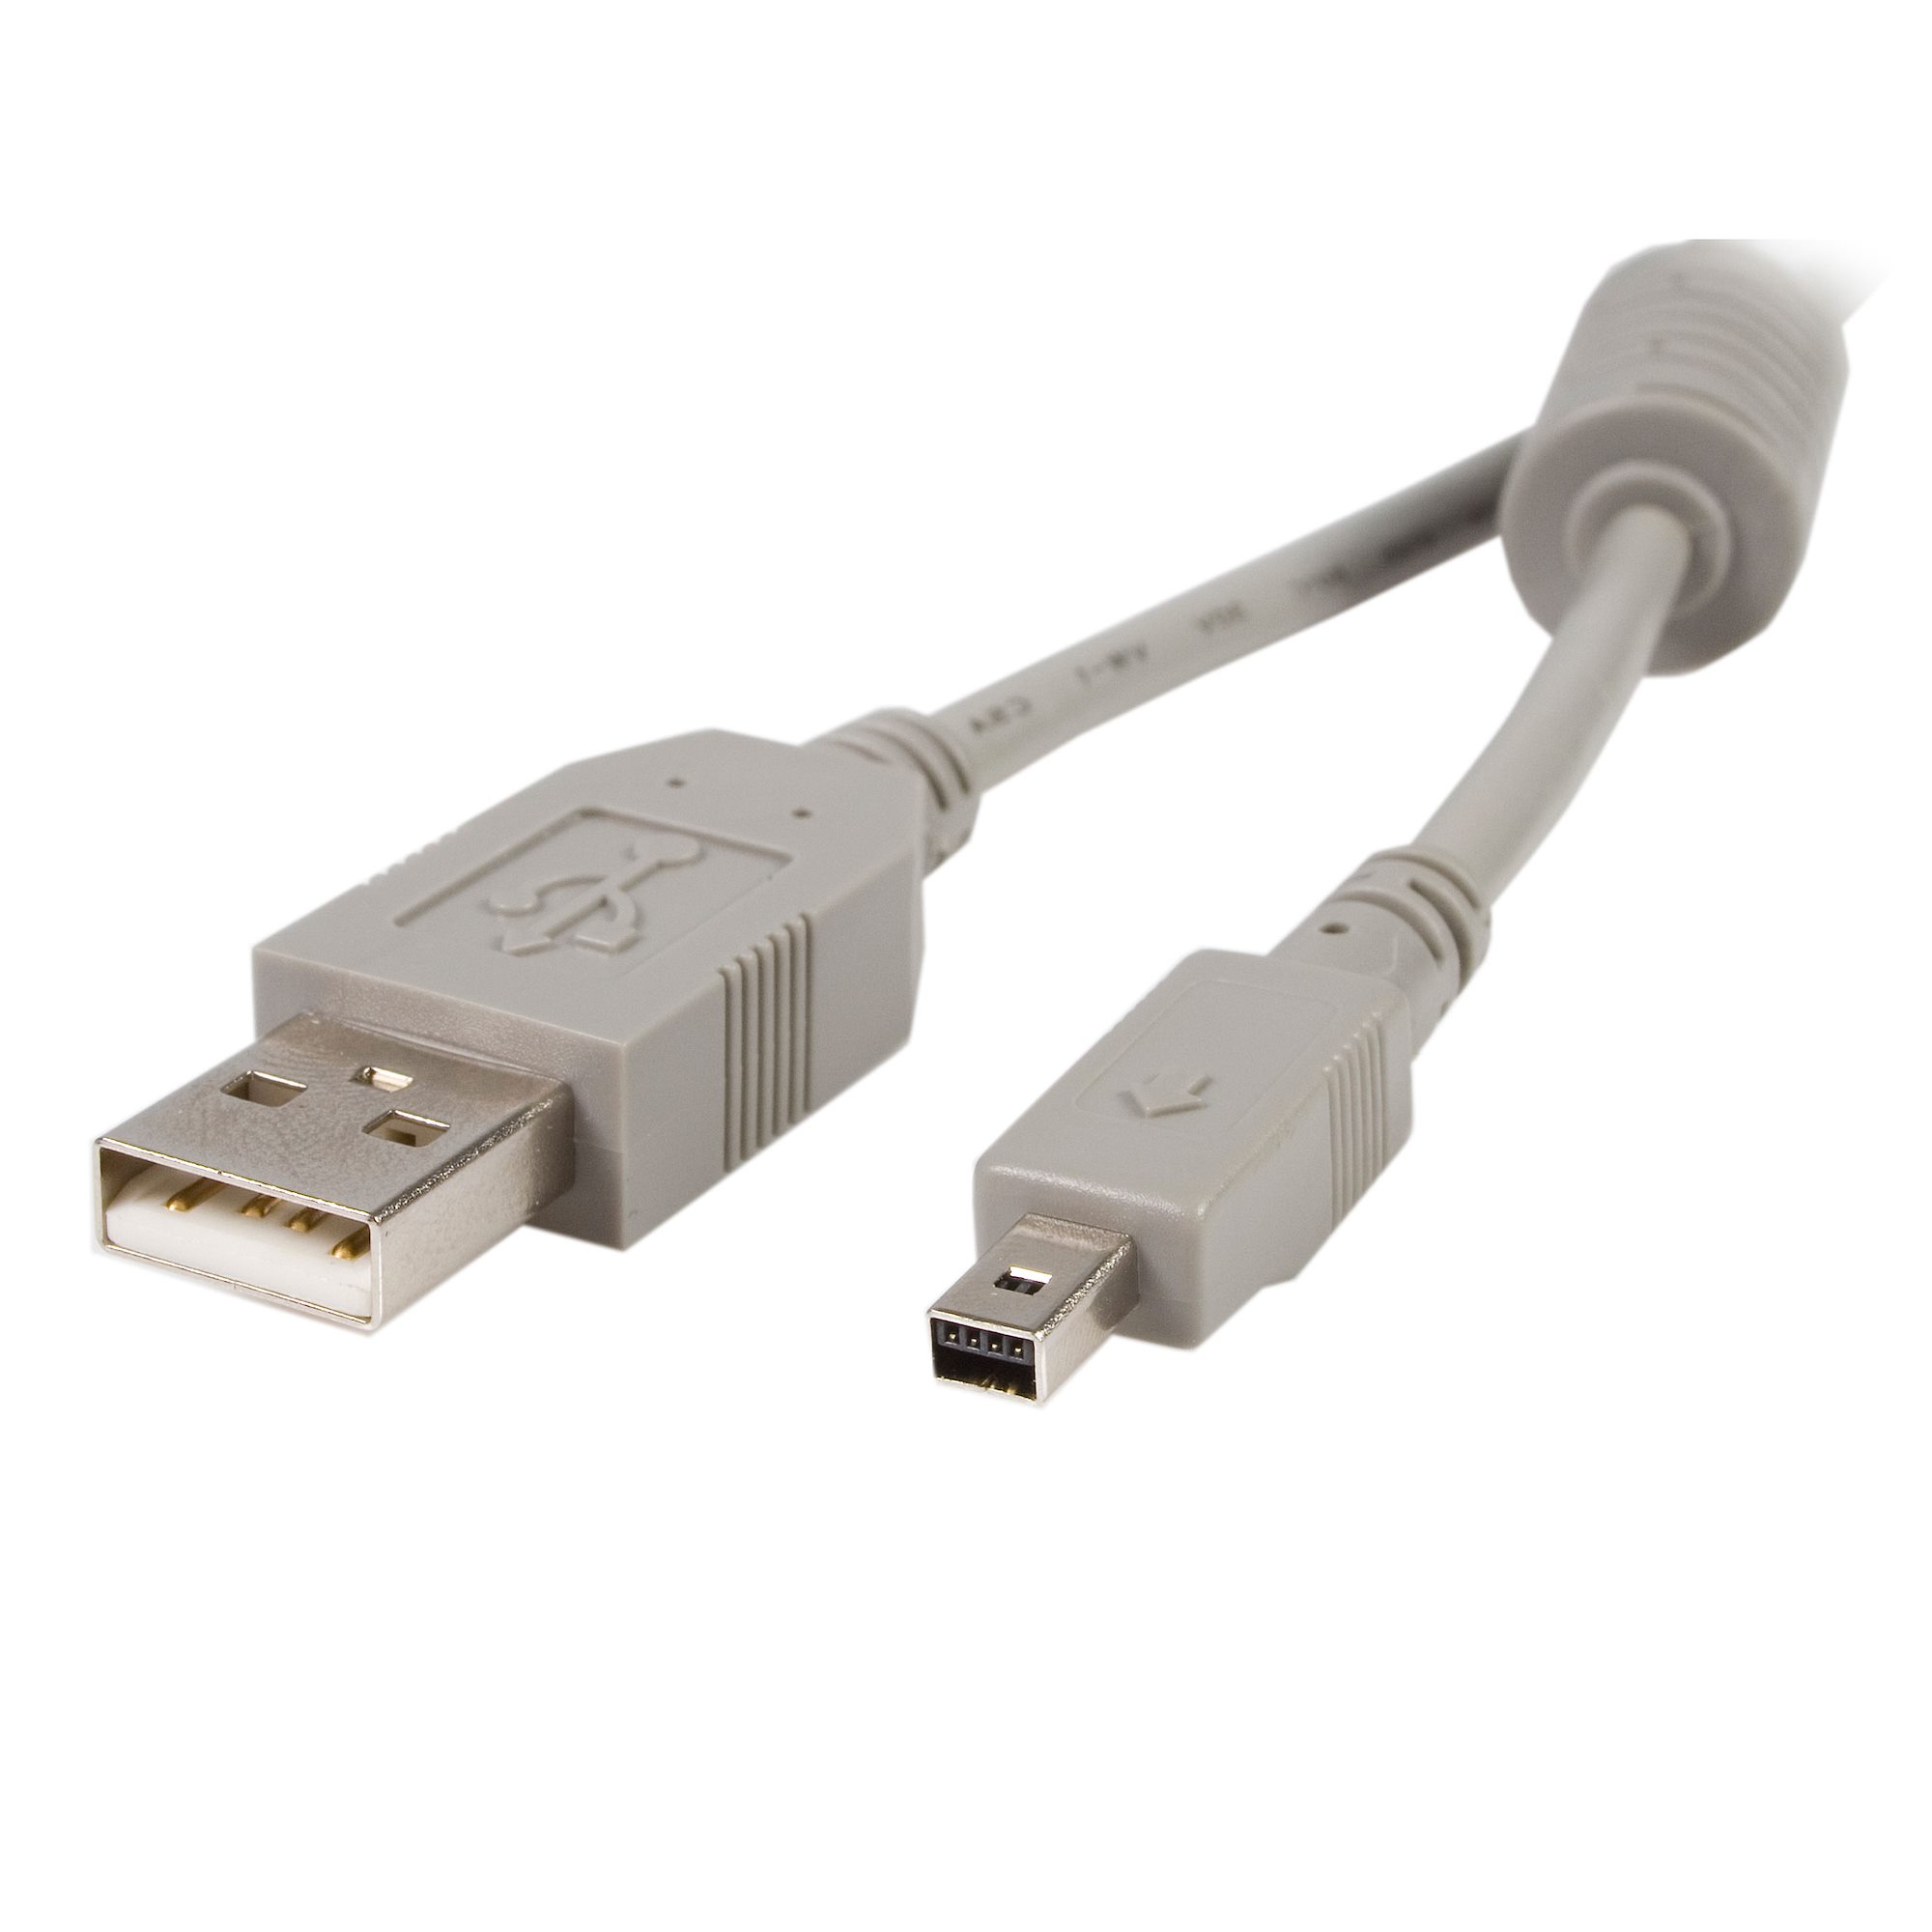 Vijftig eetlust deksel 3ft USB Cable for Fuji Digital Camera - Mini USB Cables & Adapters |  StarTech.com